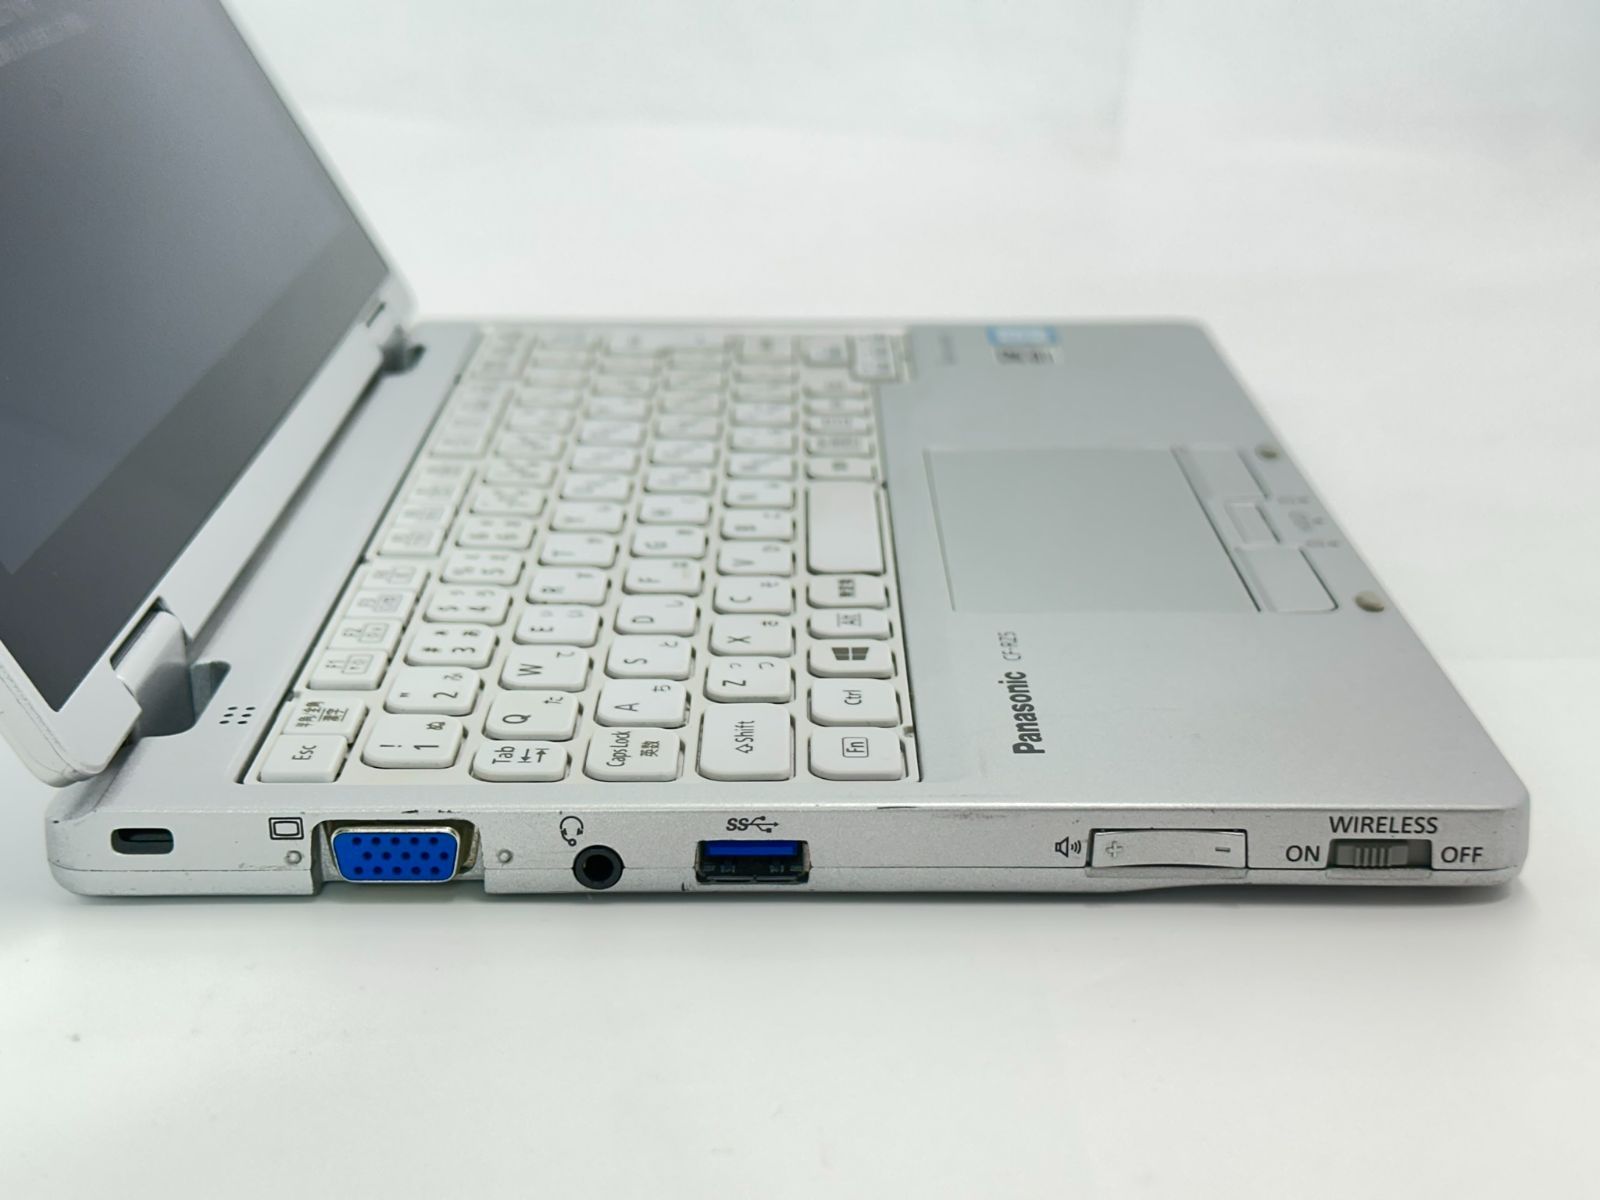 送料無料 保証付 日本製 高速SSD タッチパネル 10.1型 ノートパソコン 